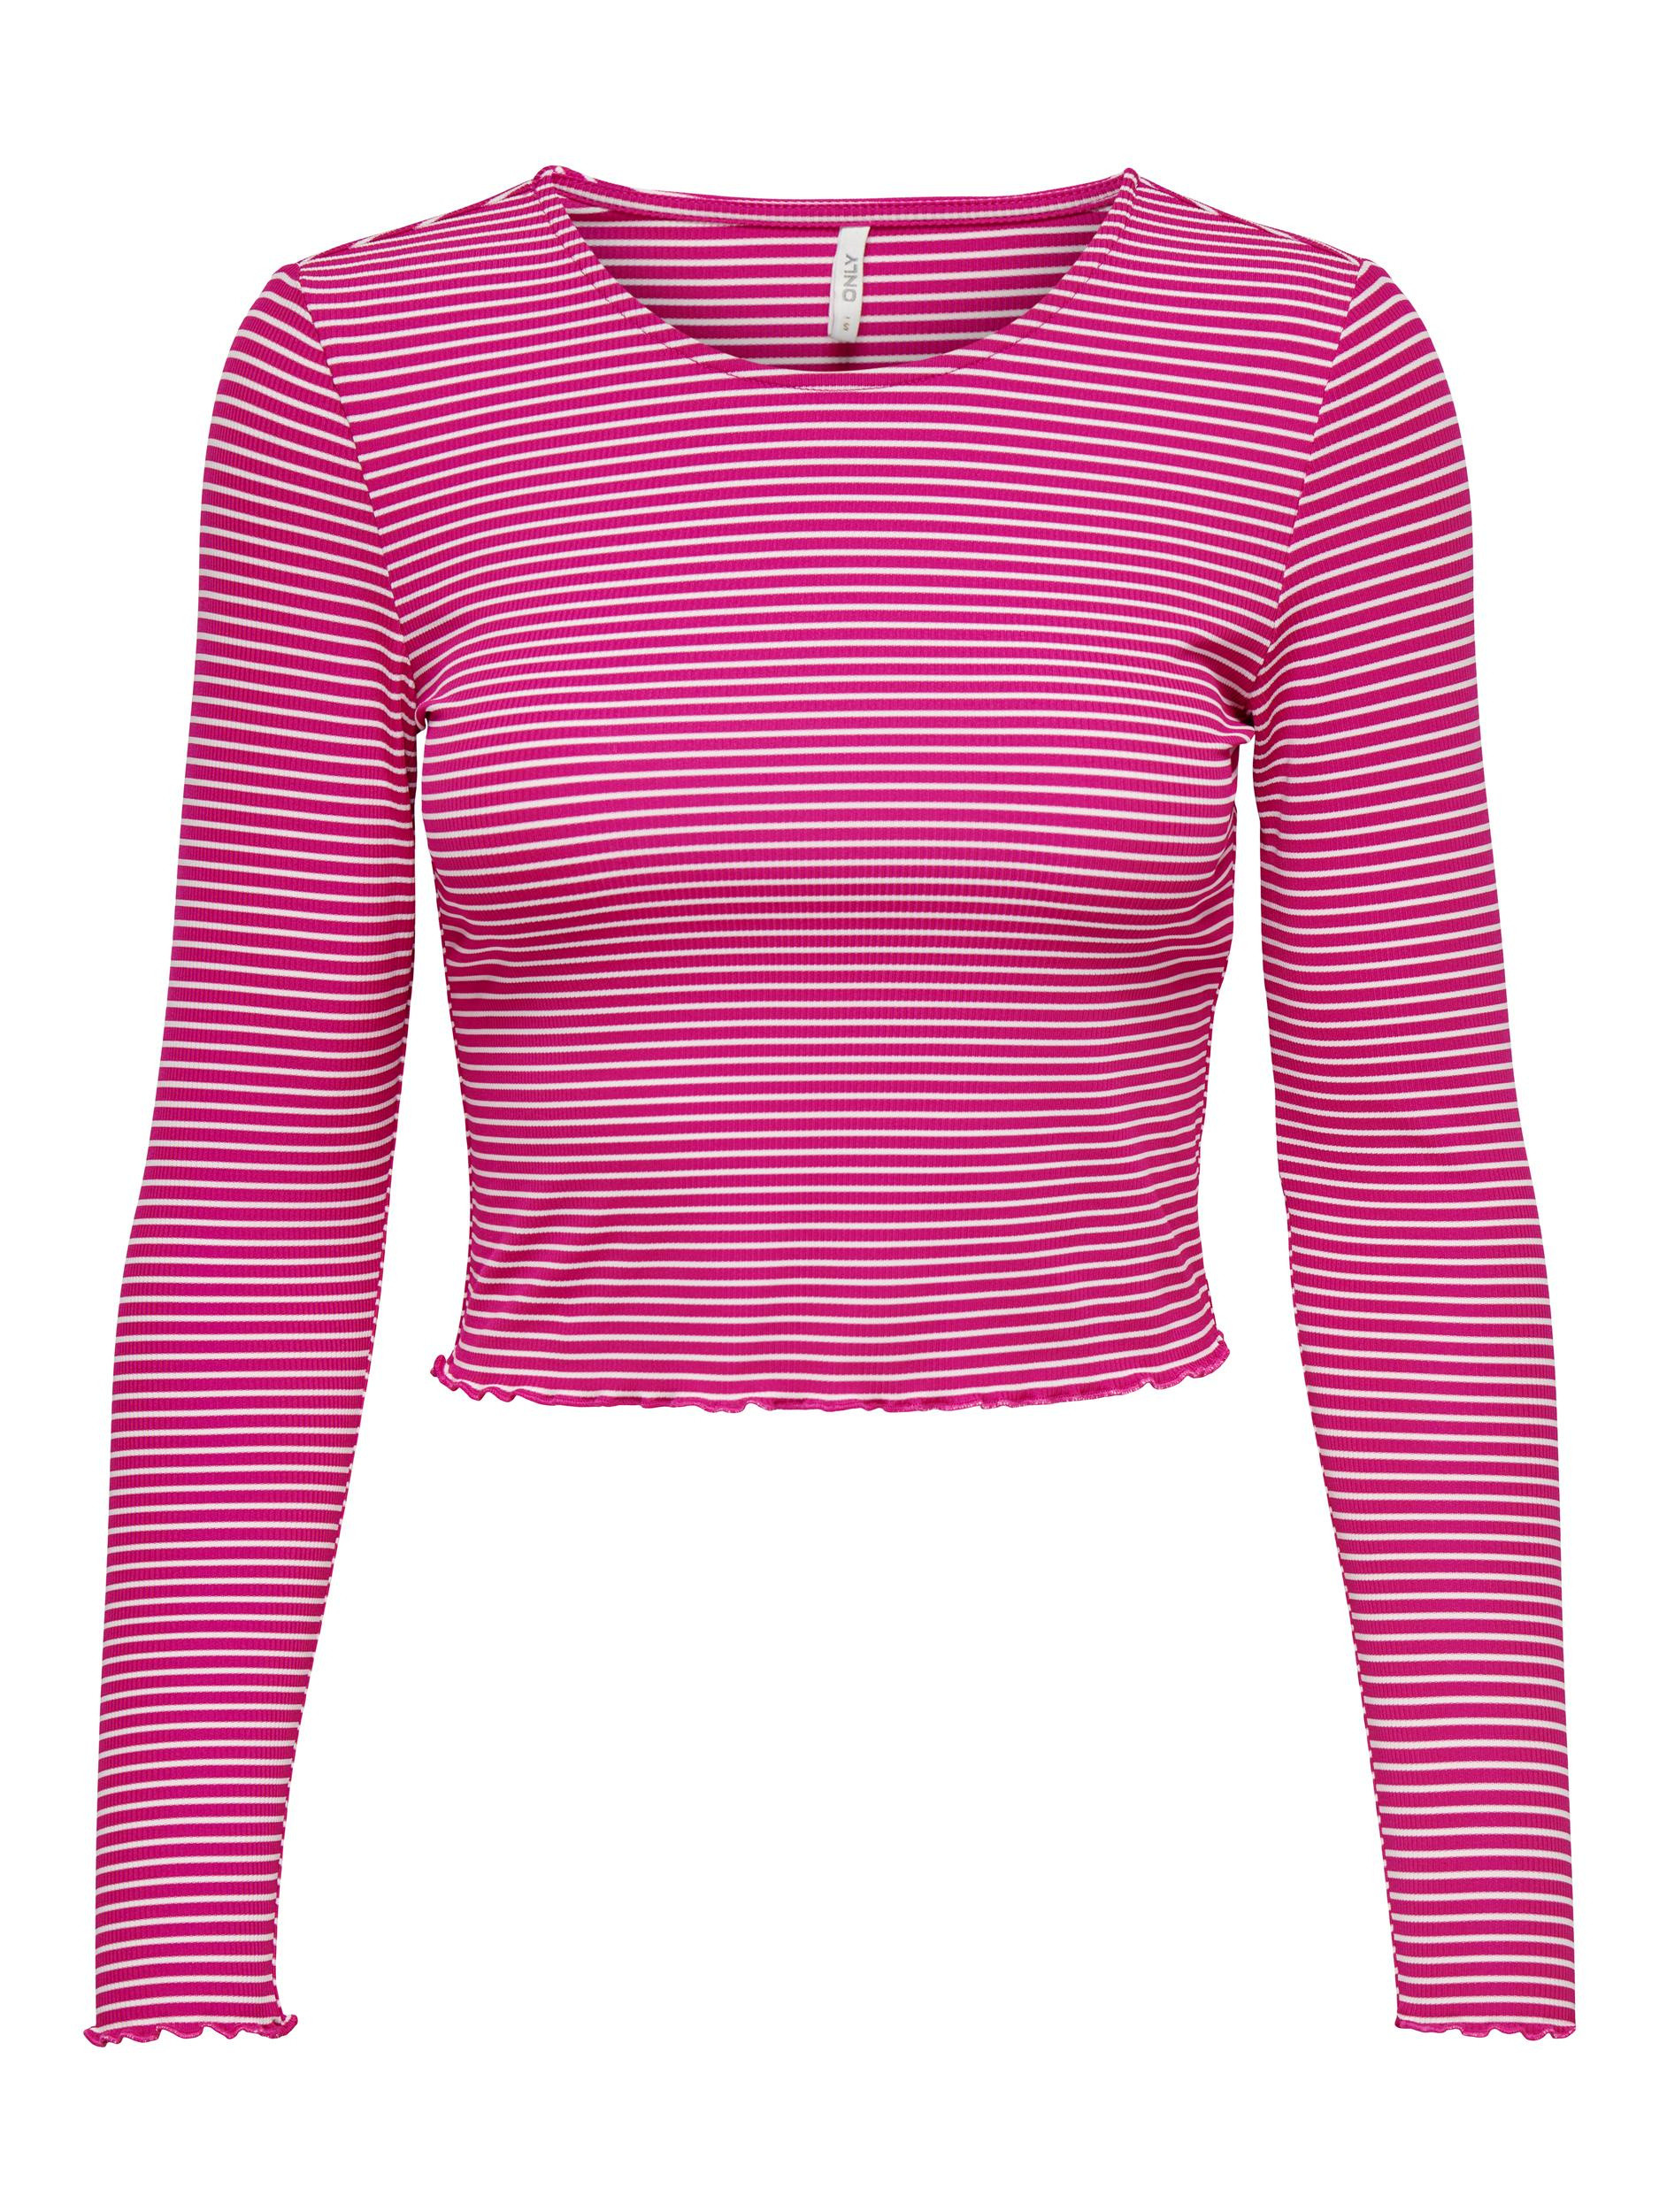 Only - Regular fit striped top, Dark Pink, large image number 0